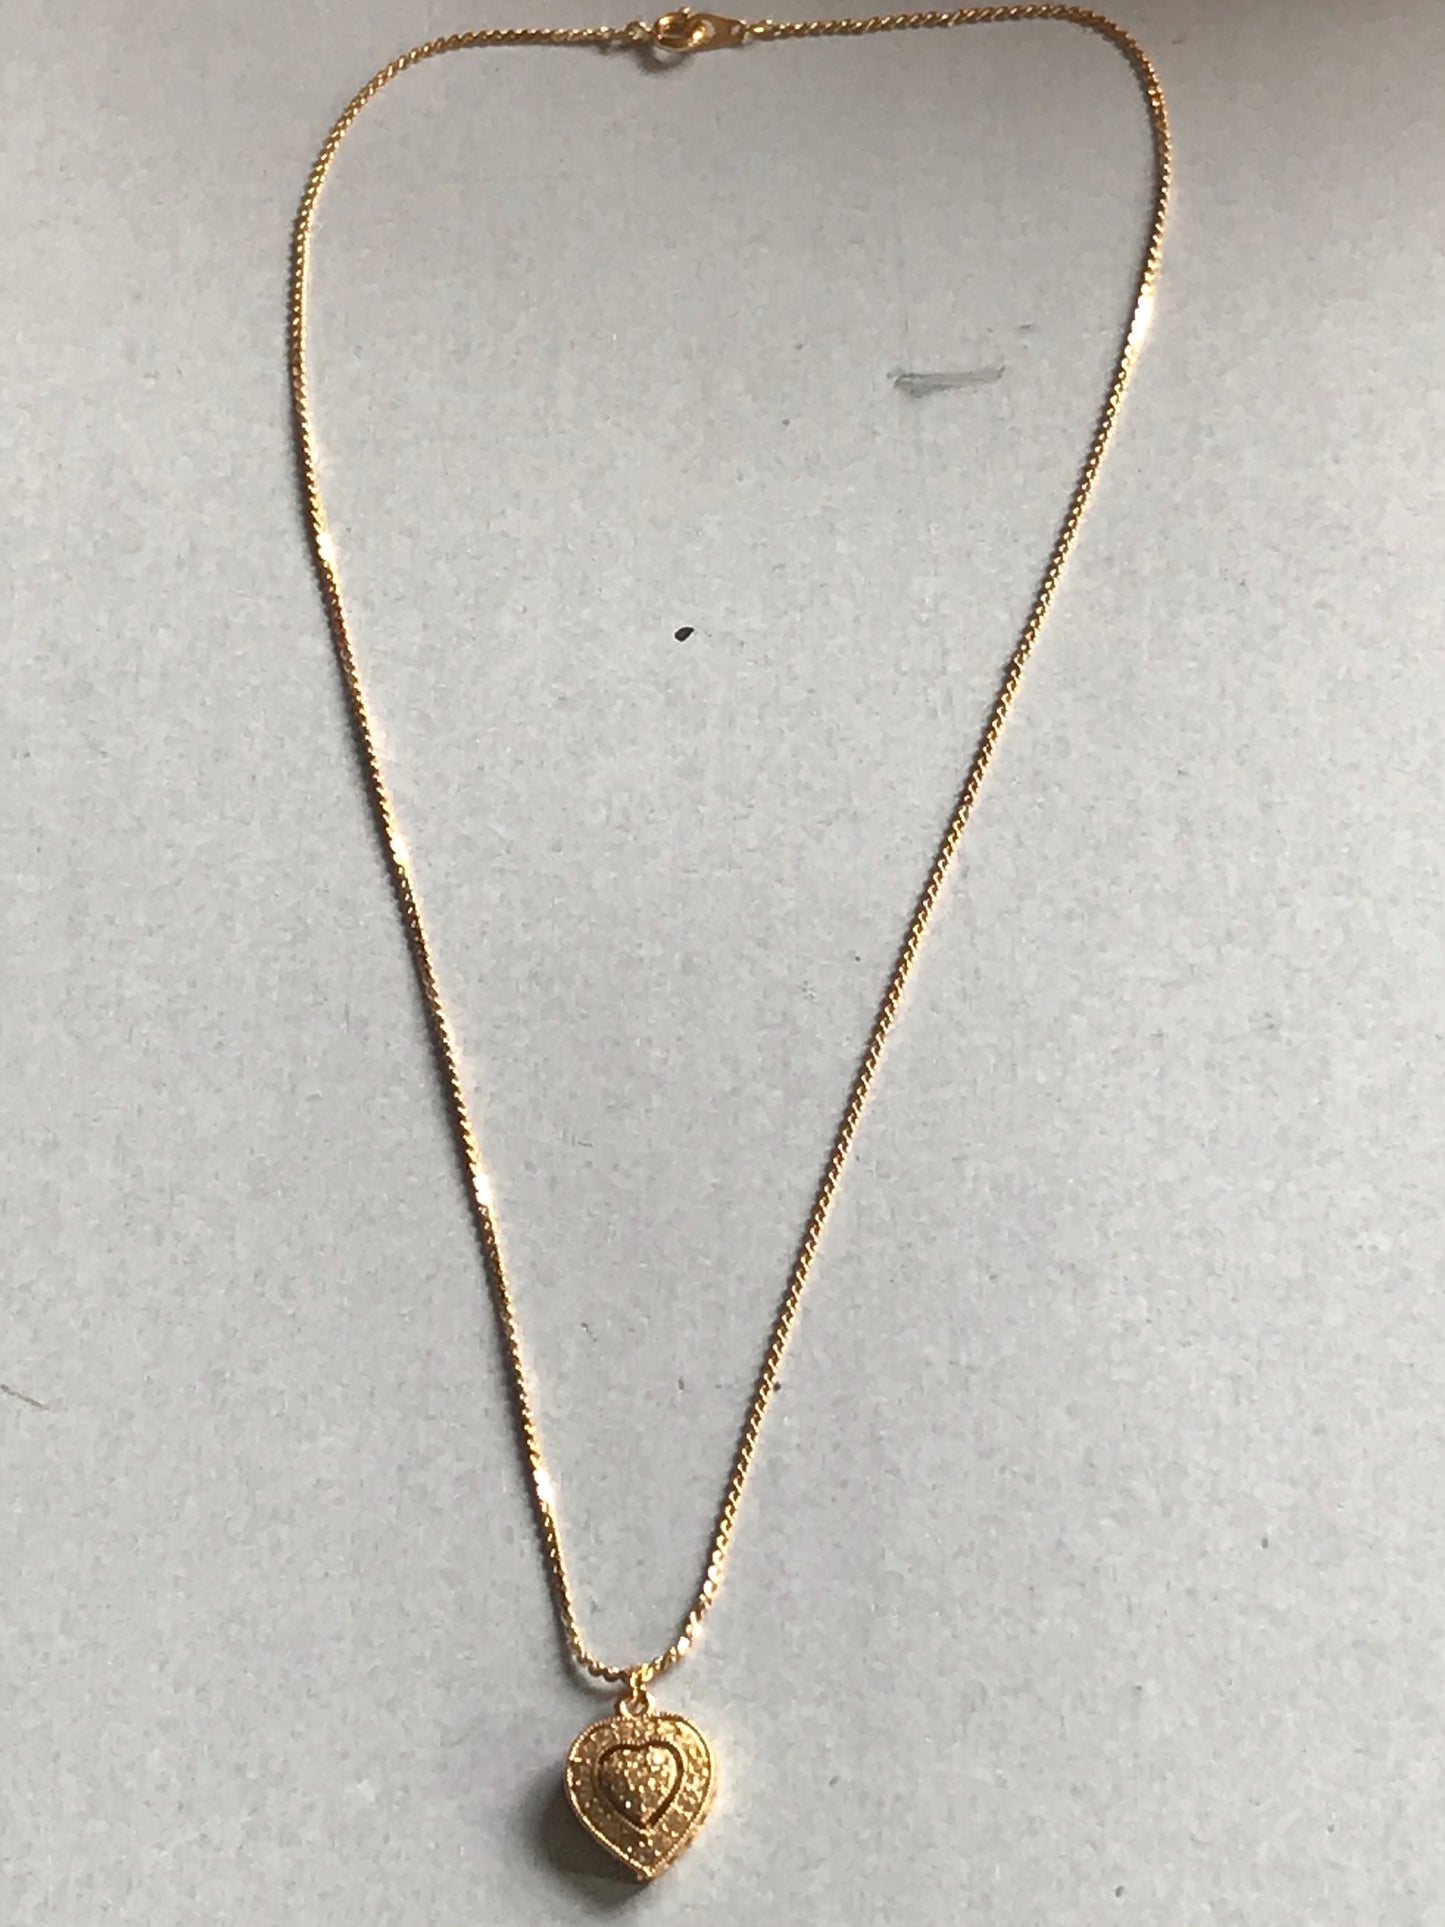 Embellished Golden Heart Necklace